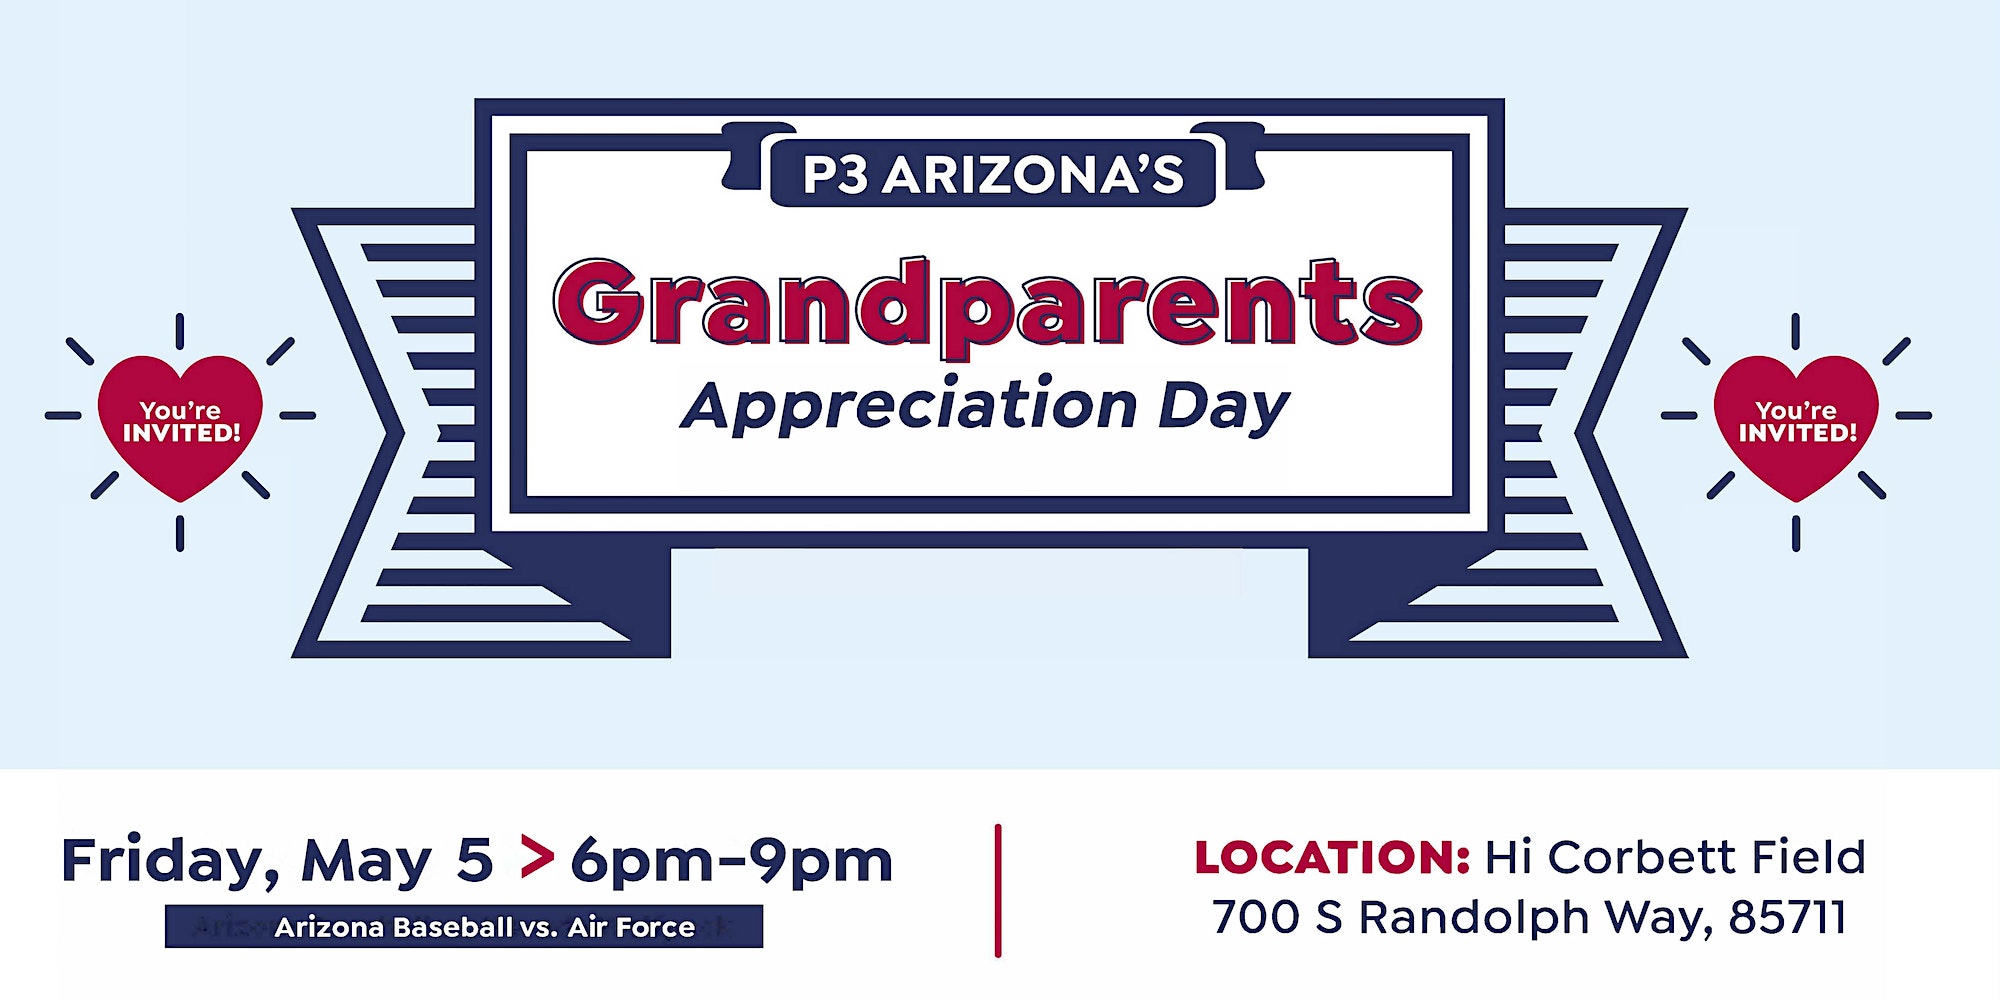 P3 Arizona- Grandparents Appreciation Day